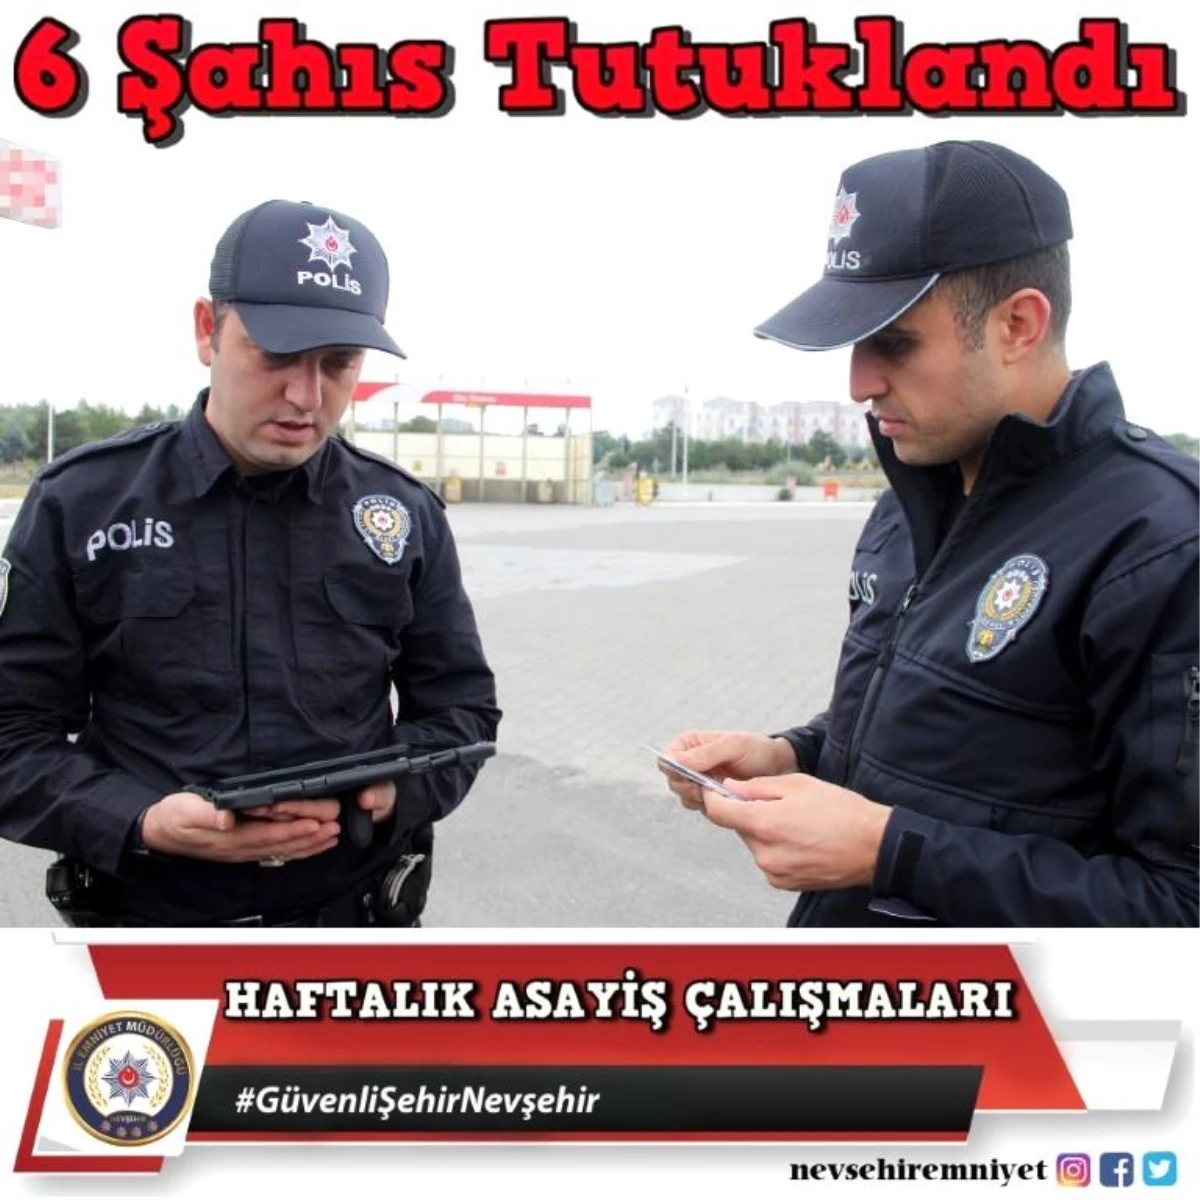 Nevşehir 3. sayfa haberi | Nevşehir\'de çeşitli suçlardan 6 kişi tutuklandı